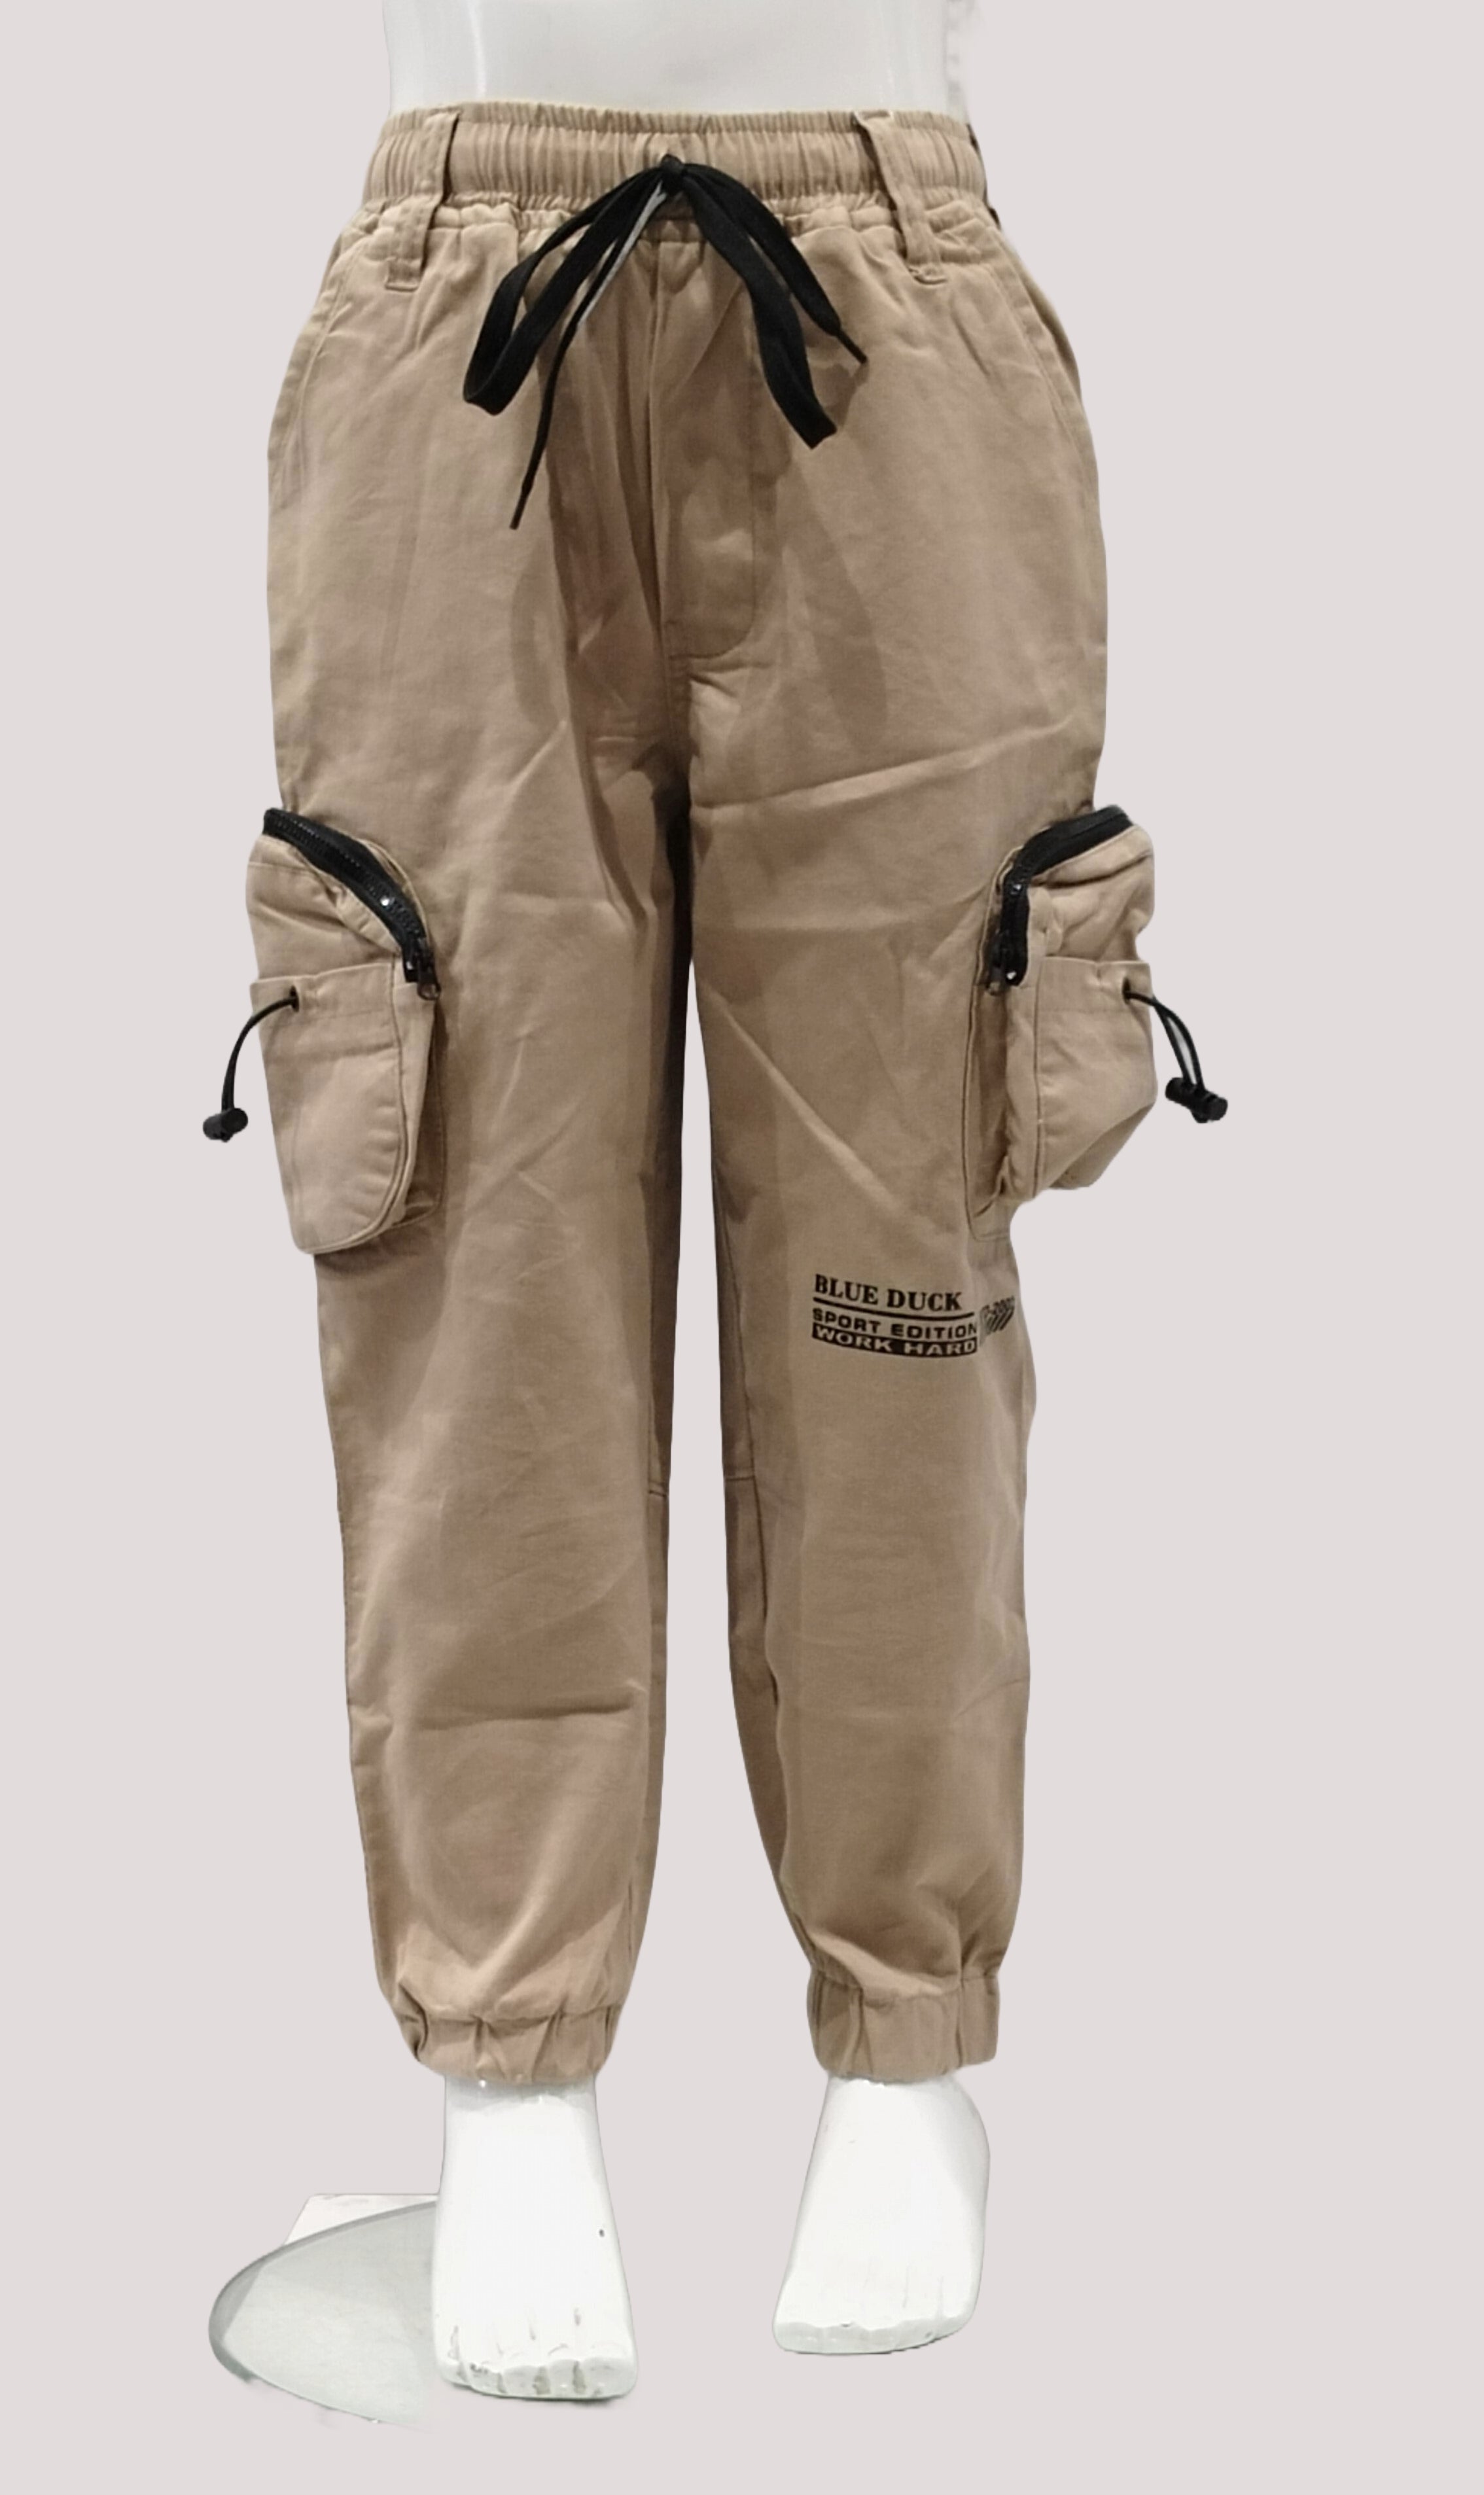 Boys Fancy Elastic Waist Six Pocket Jogger Style Cotton Cargo Pant